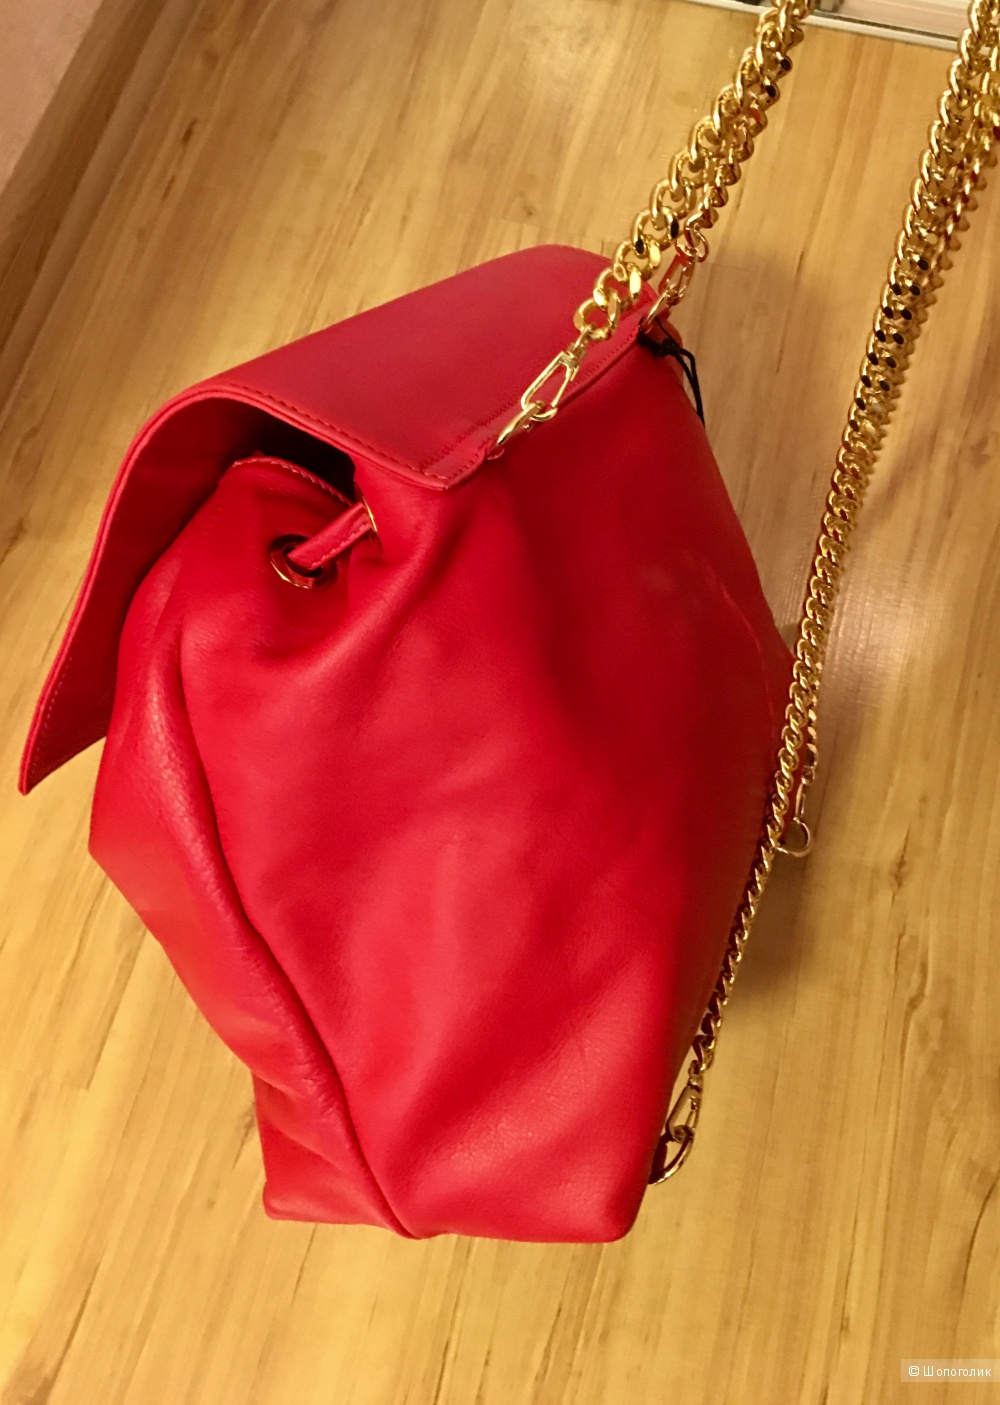 Шикарный рюкзак Jolie by Edward Spiers, цвет красный, Италия, кожа